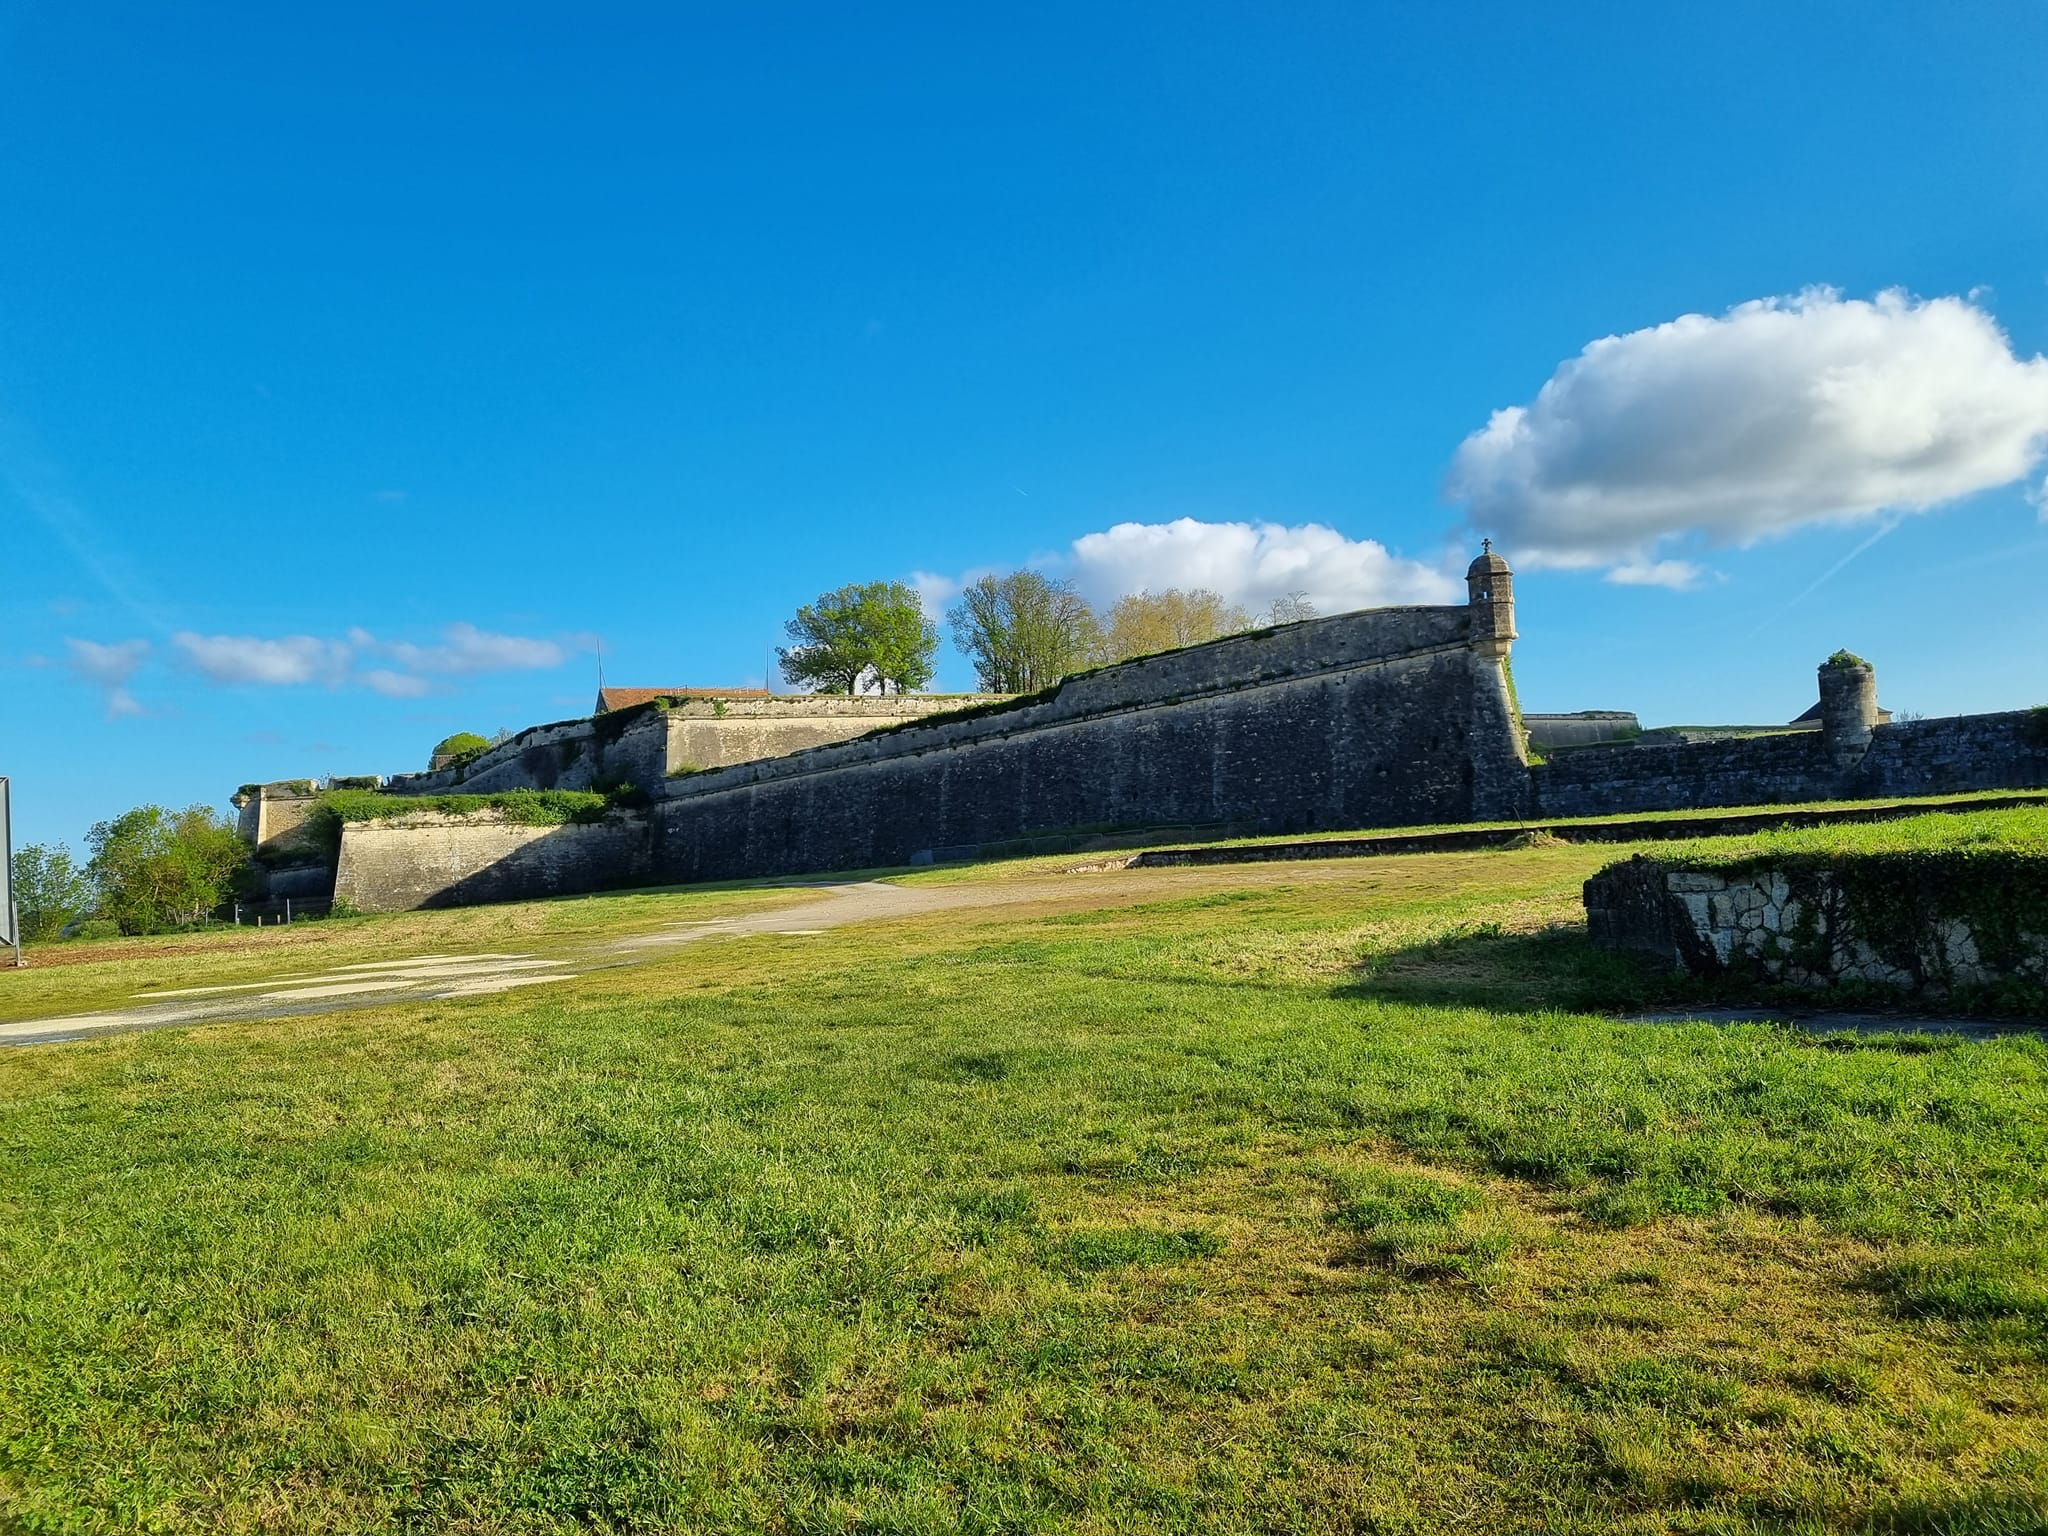 המצודה האדירה שנבנתה בידי אדריכל צבאי בשם וובאן עם קירות מגן וחפיר שמקיף את המצודה. במצודה גרו אלפי חיילים ונכים מצבא לואי ה-14 - 'מלך השמש'. צרפת נהנתה מפריחה שלטונית בתקופתו